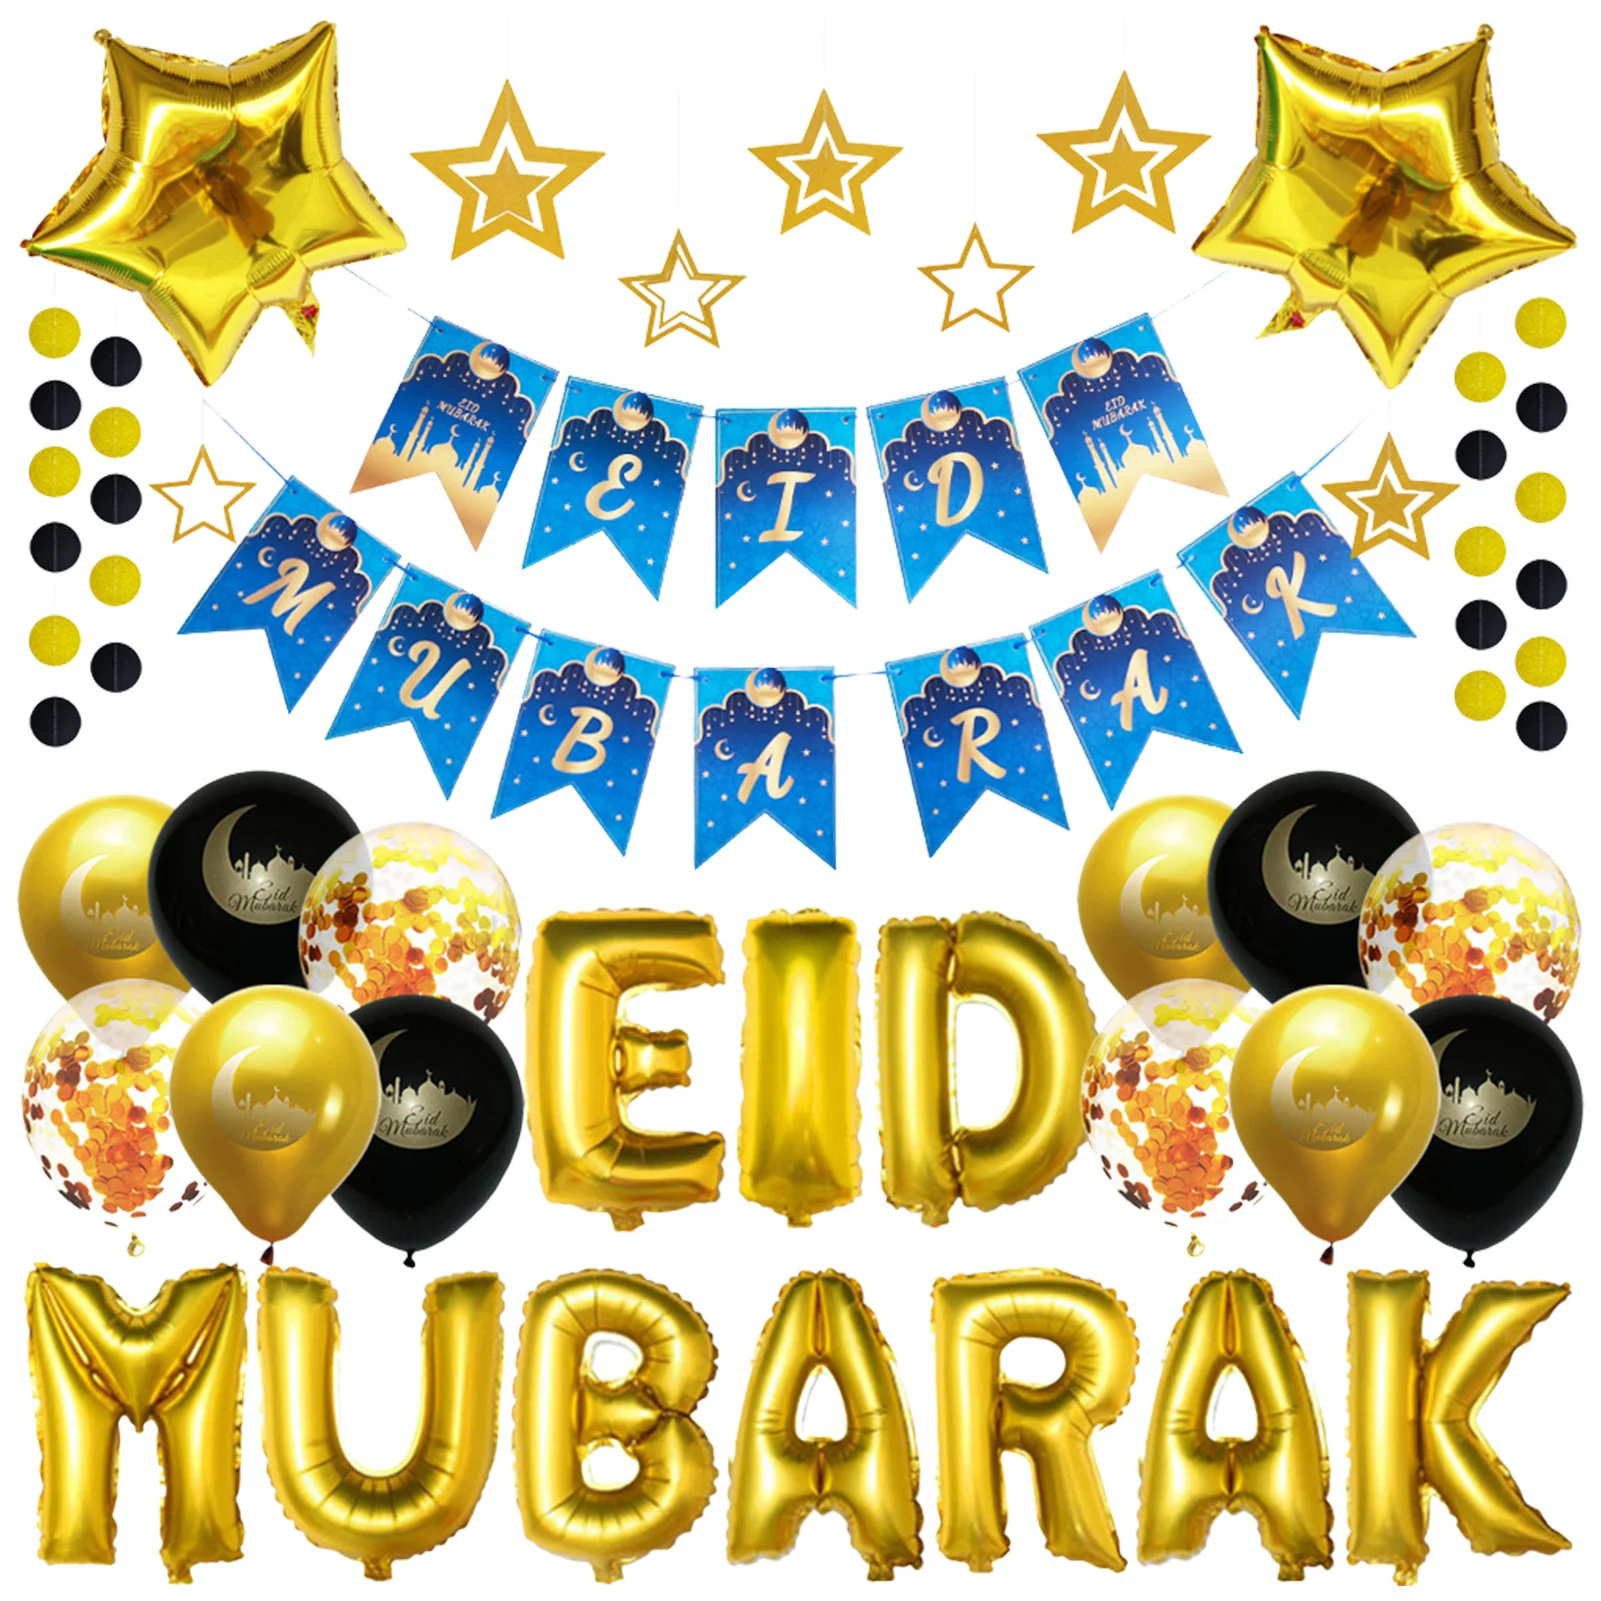 

2022 набор воздушных шаров Eid Mubarak, украшения, латексные шары, праздничный Декор Рамадан Mubarak, баннер в виде звезды и Луны, золотые украшения Eid